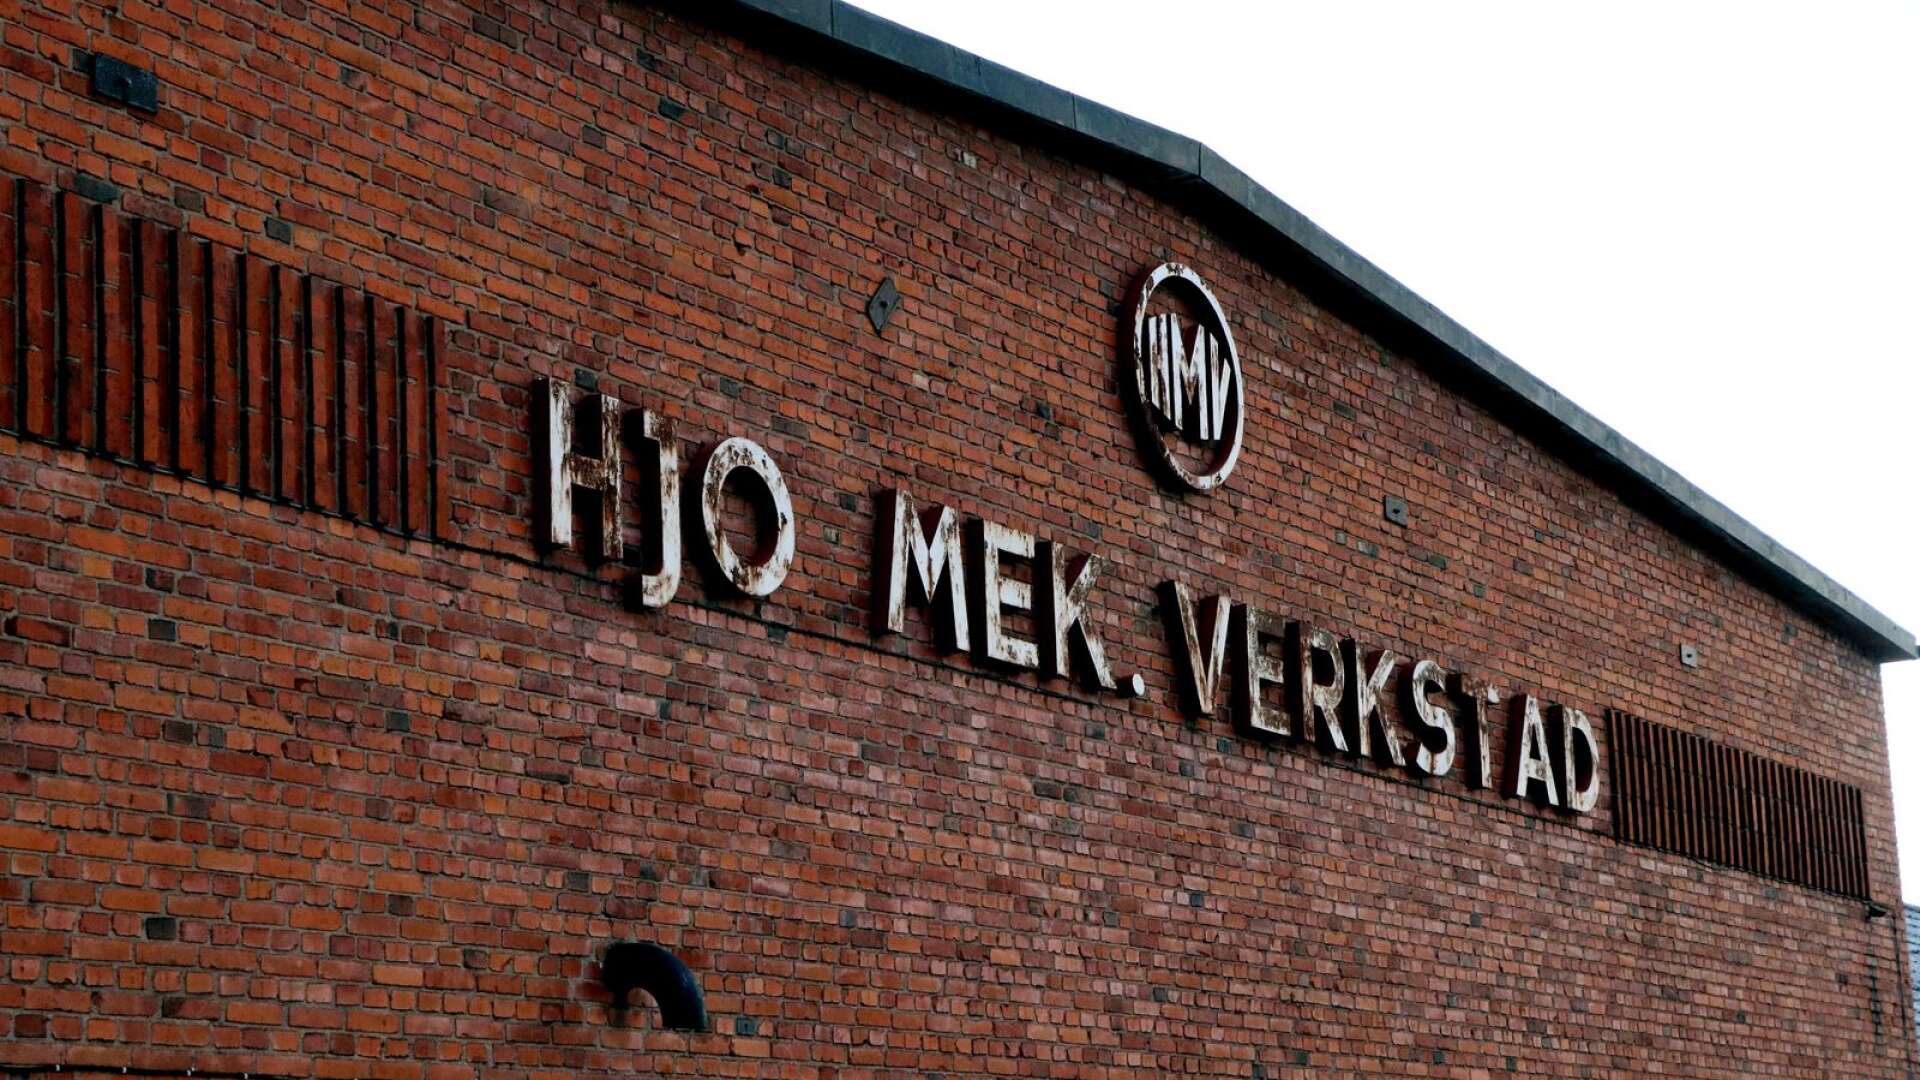 Fastigheten där Hjo Mekaniska Verkstad en gång huserade är såld och får nya ägare vid halvårsskiftet.